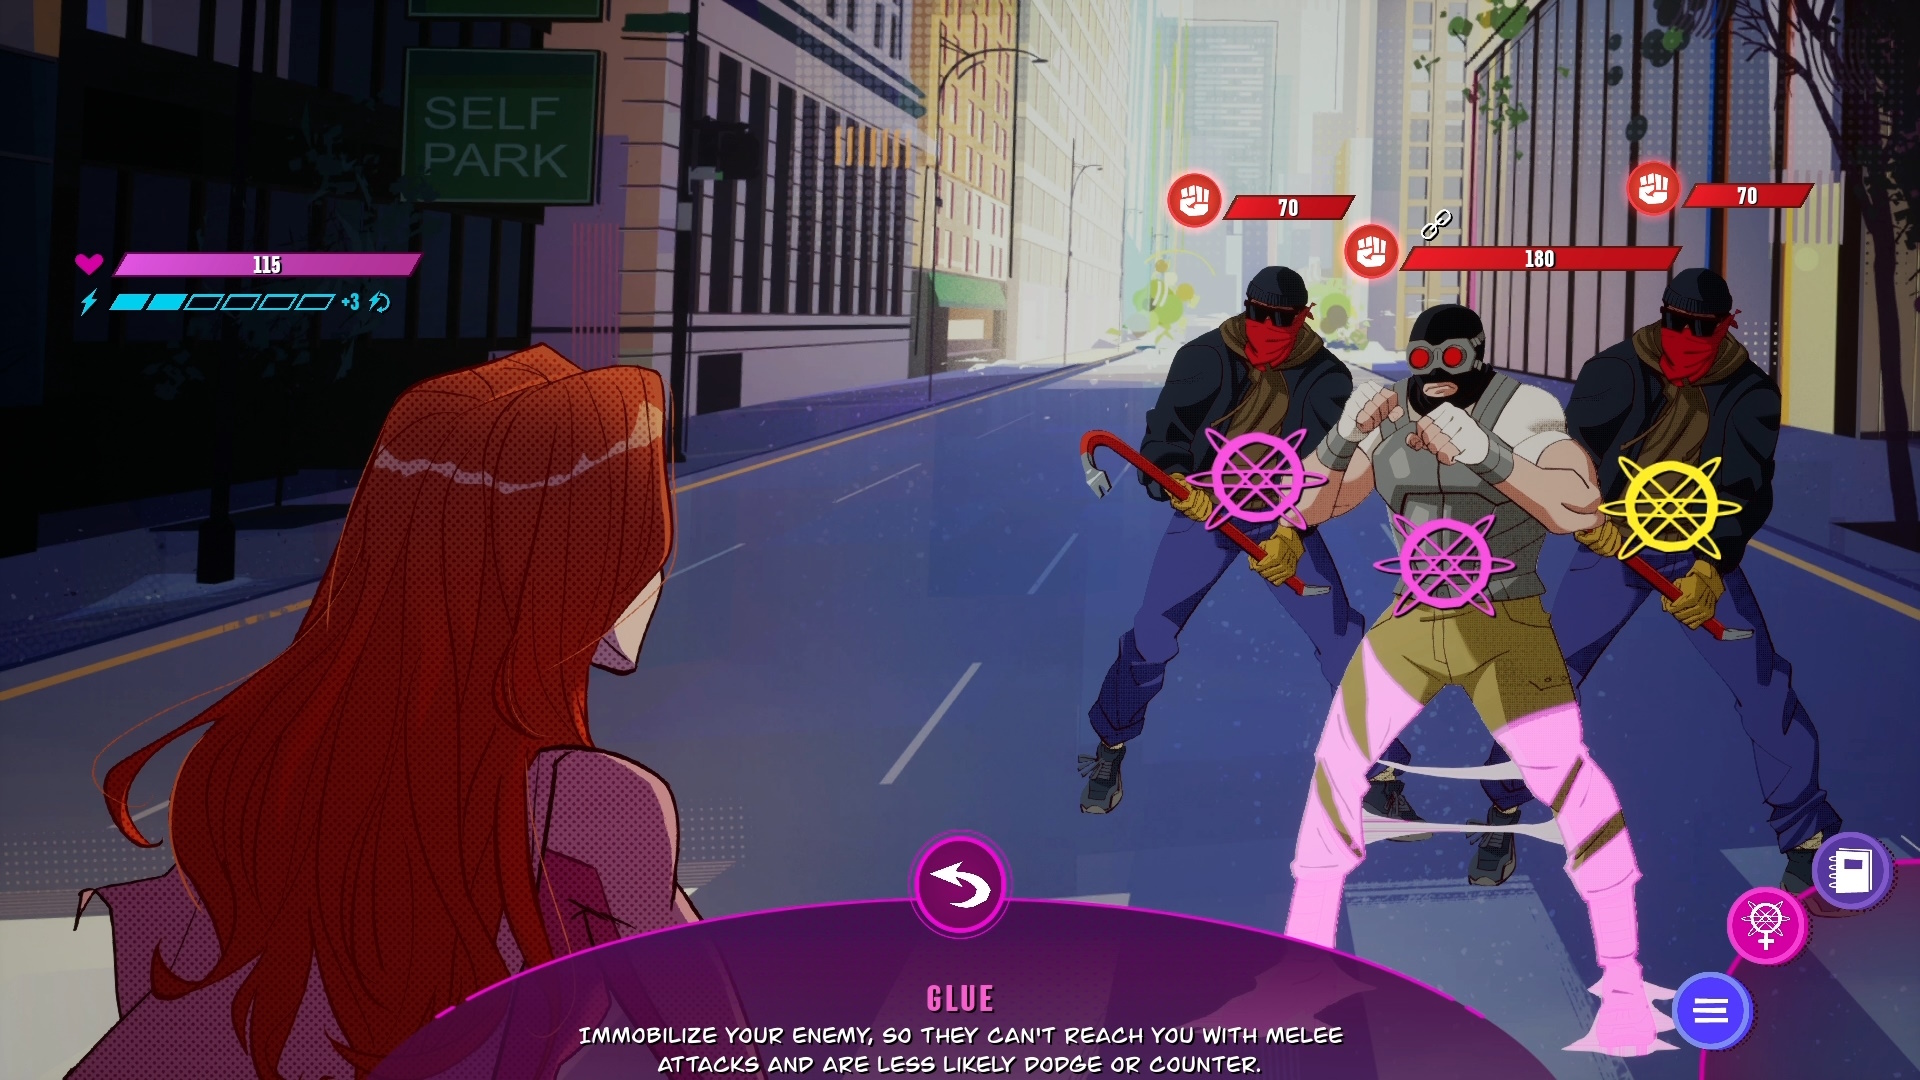 Snímek obrazovky z videohry Invincible Presents: Atom Eve, na kterém je zachycen boj.